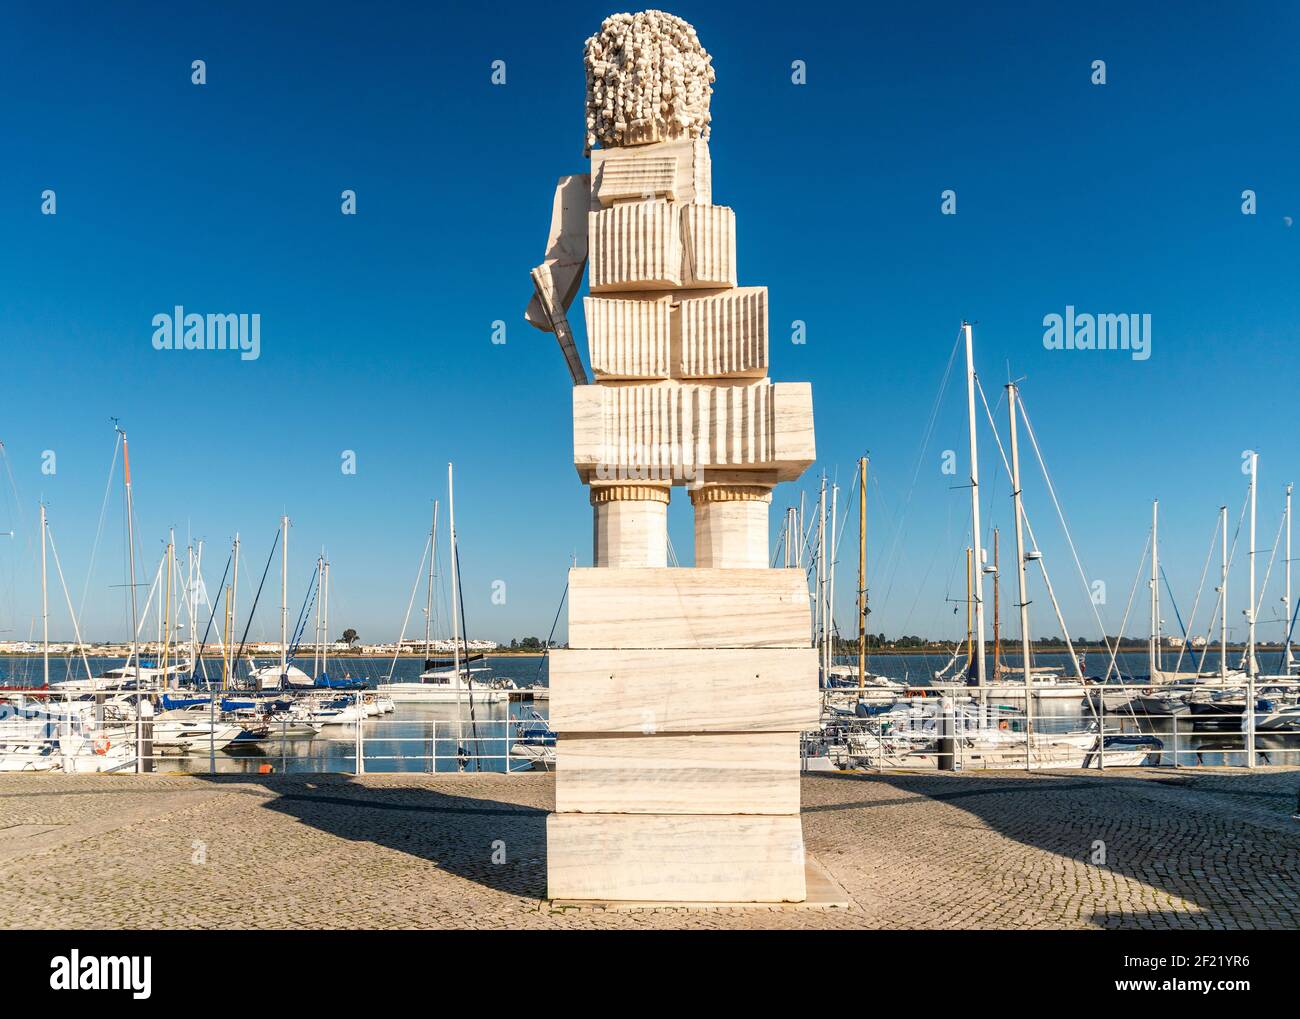 Statue de Marquis de Pombal située dans le port de plaisance de Vila Real de Santo Antonio, Algarve, Portugal Banque D'Images